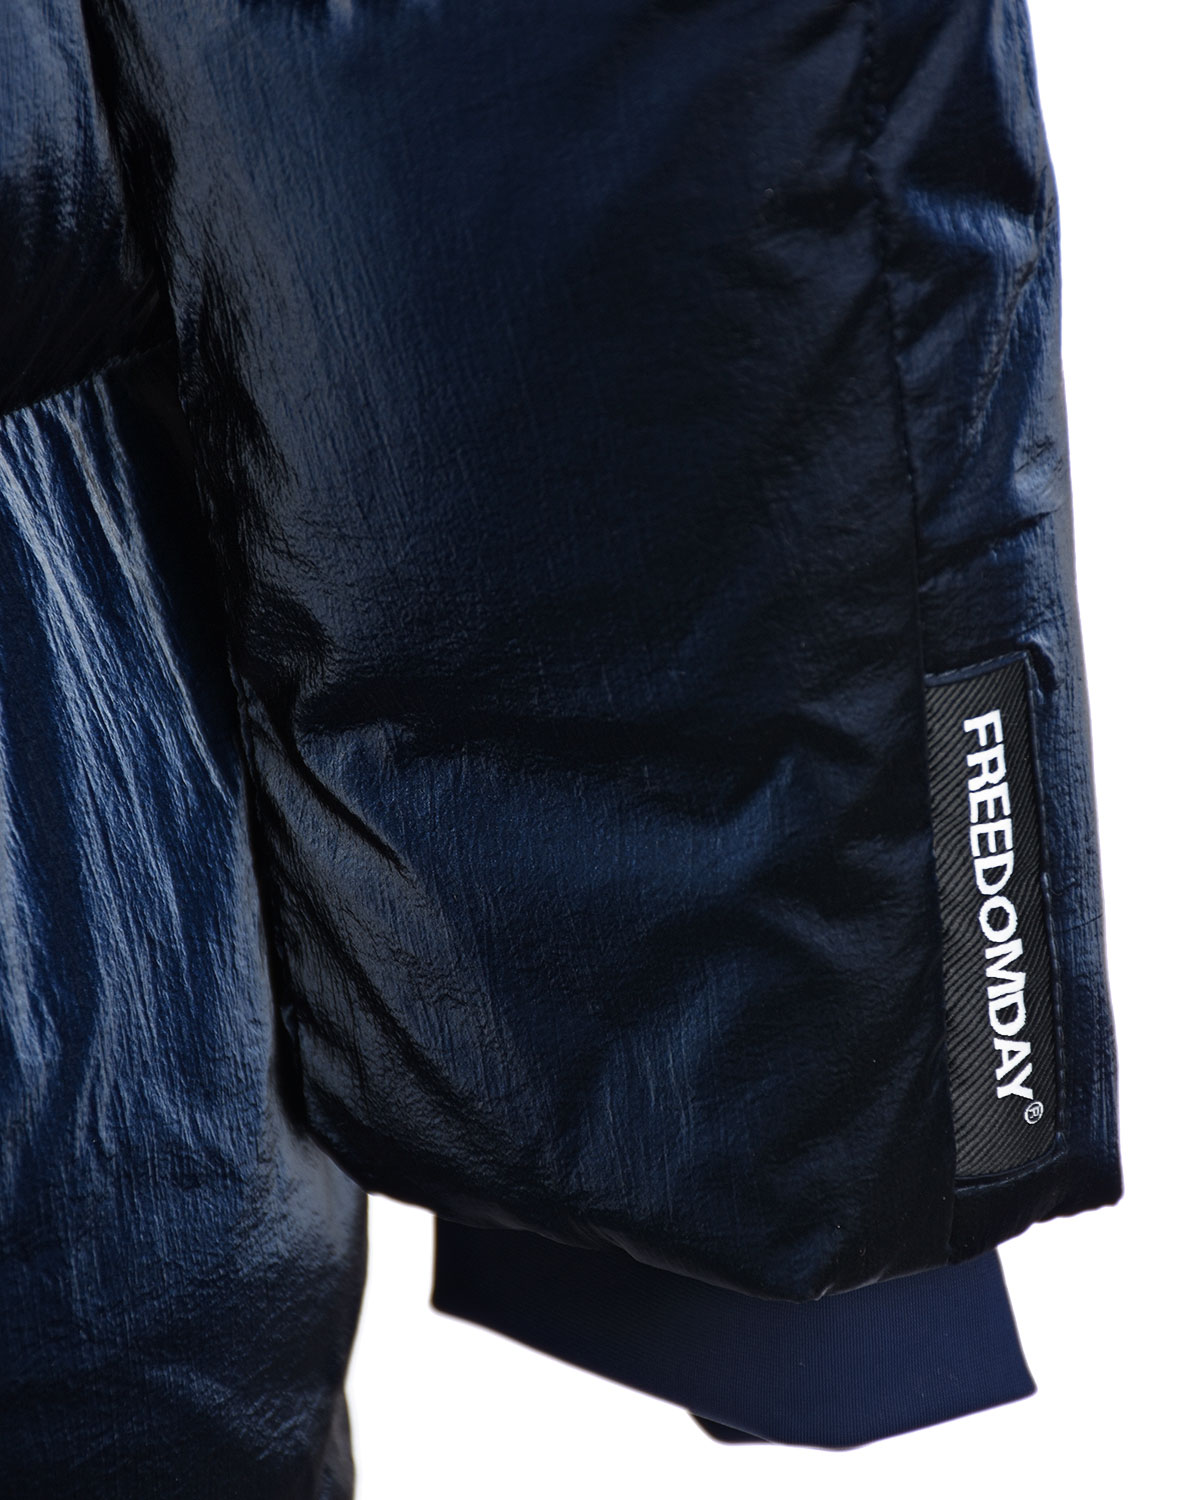 Удлиненная синяя куртка Freedomday, размер 40, цвет синий - фото 5